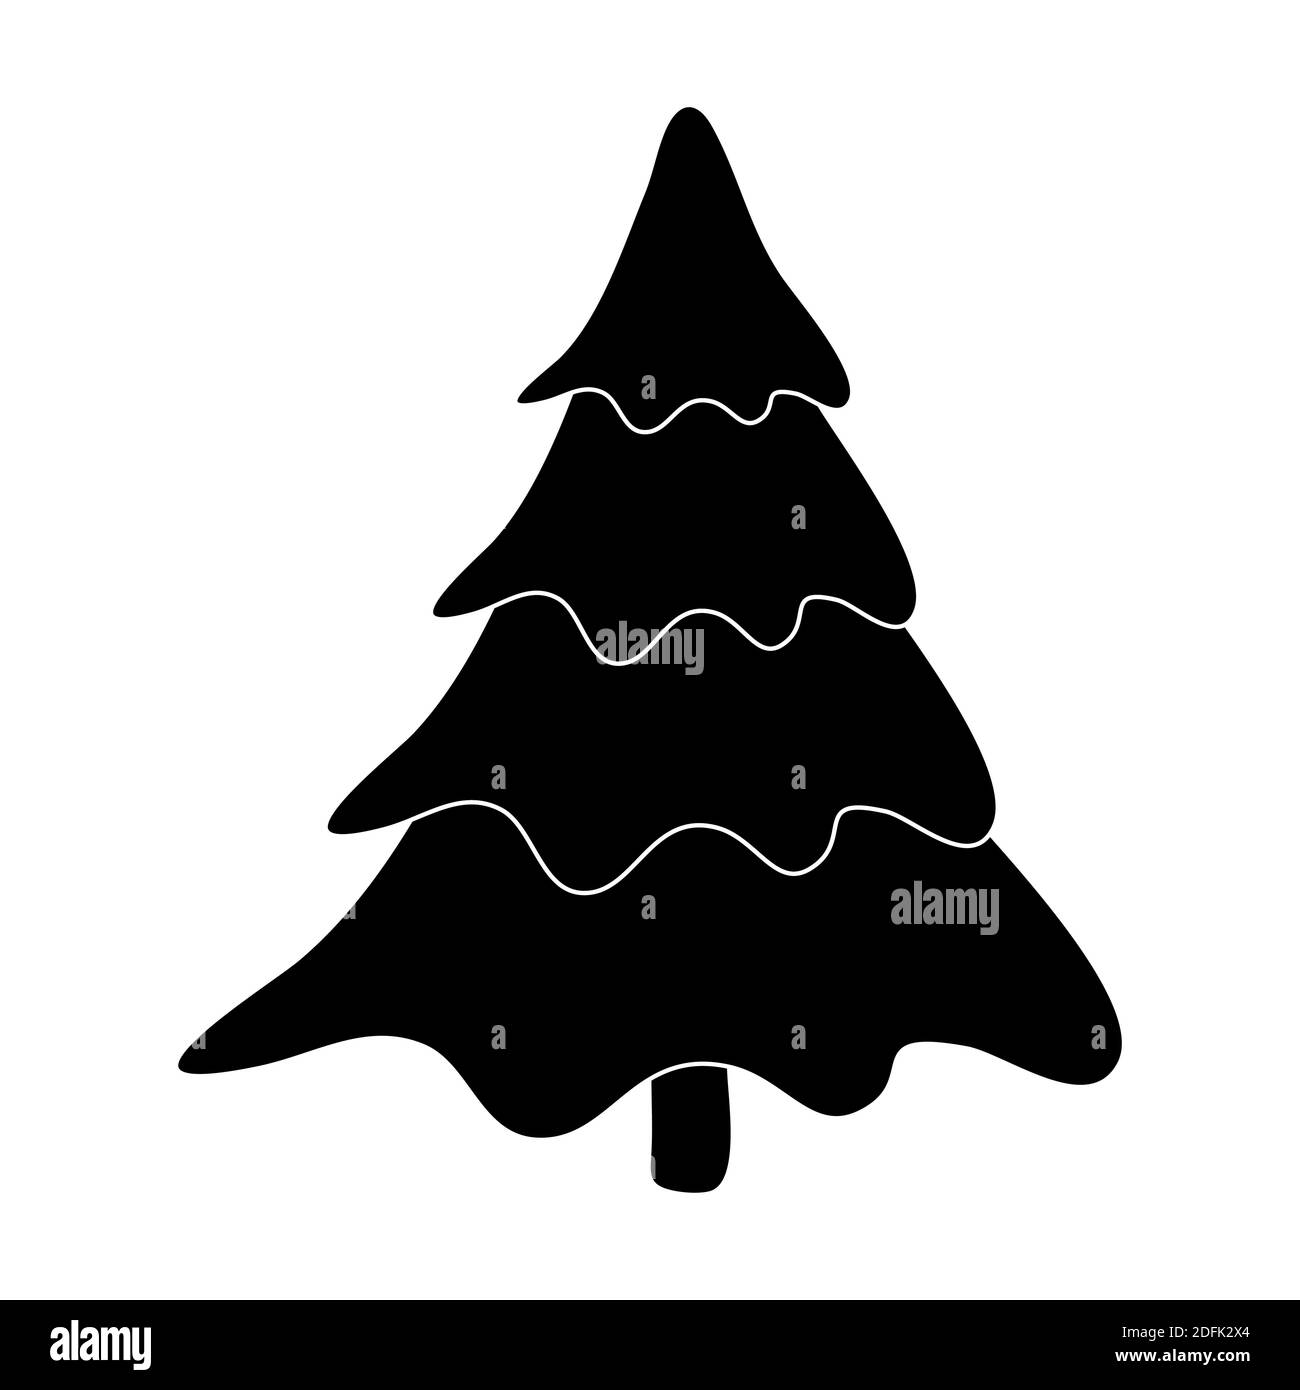 Weihnachtsbaum Silhouette. Vektorgrafik isoliert auf weißem Hintergrund. Schwarzer leerer Tannenbaum für Ihr Design. Leere einfache Kiefernzeichnung. Dezember Stock Vektor